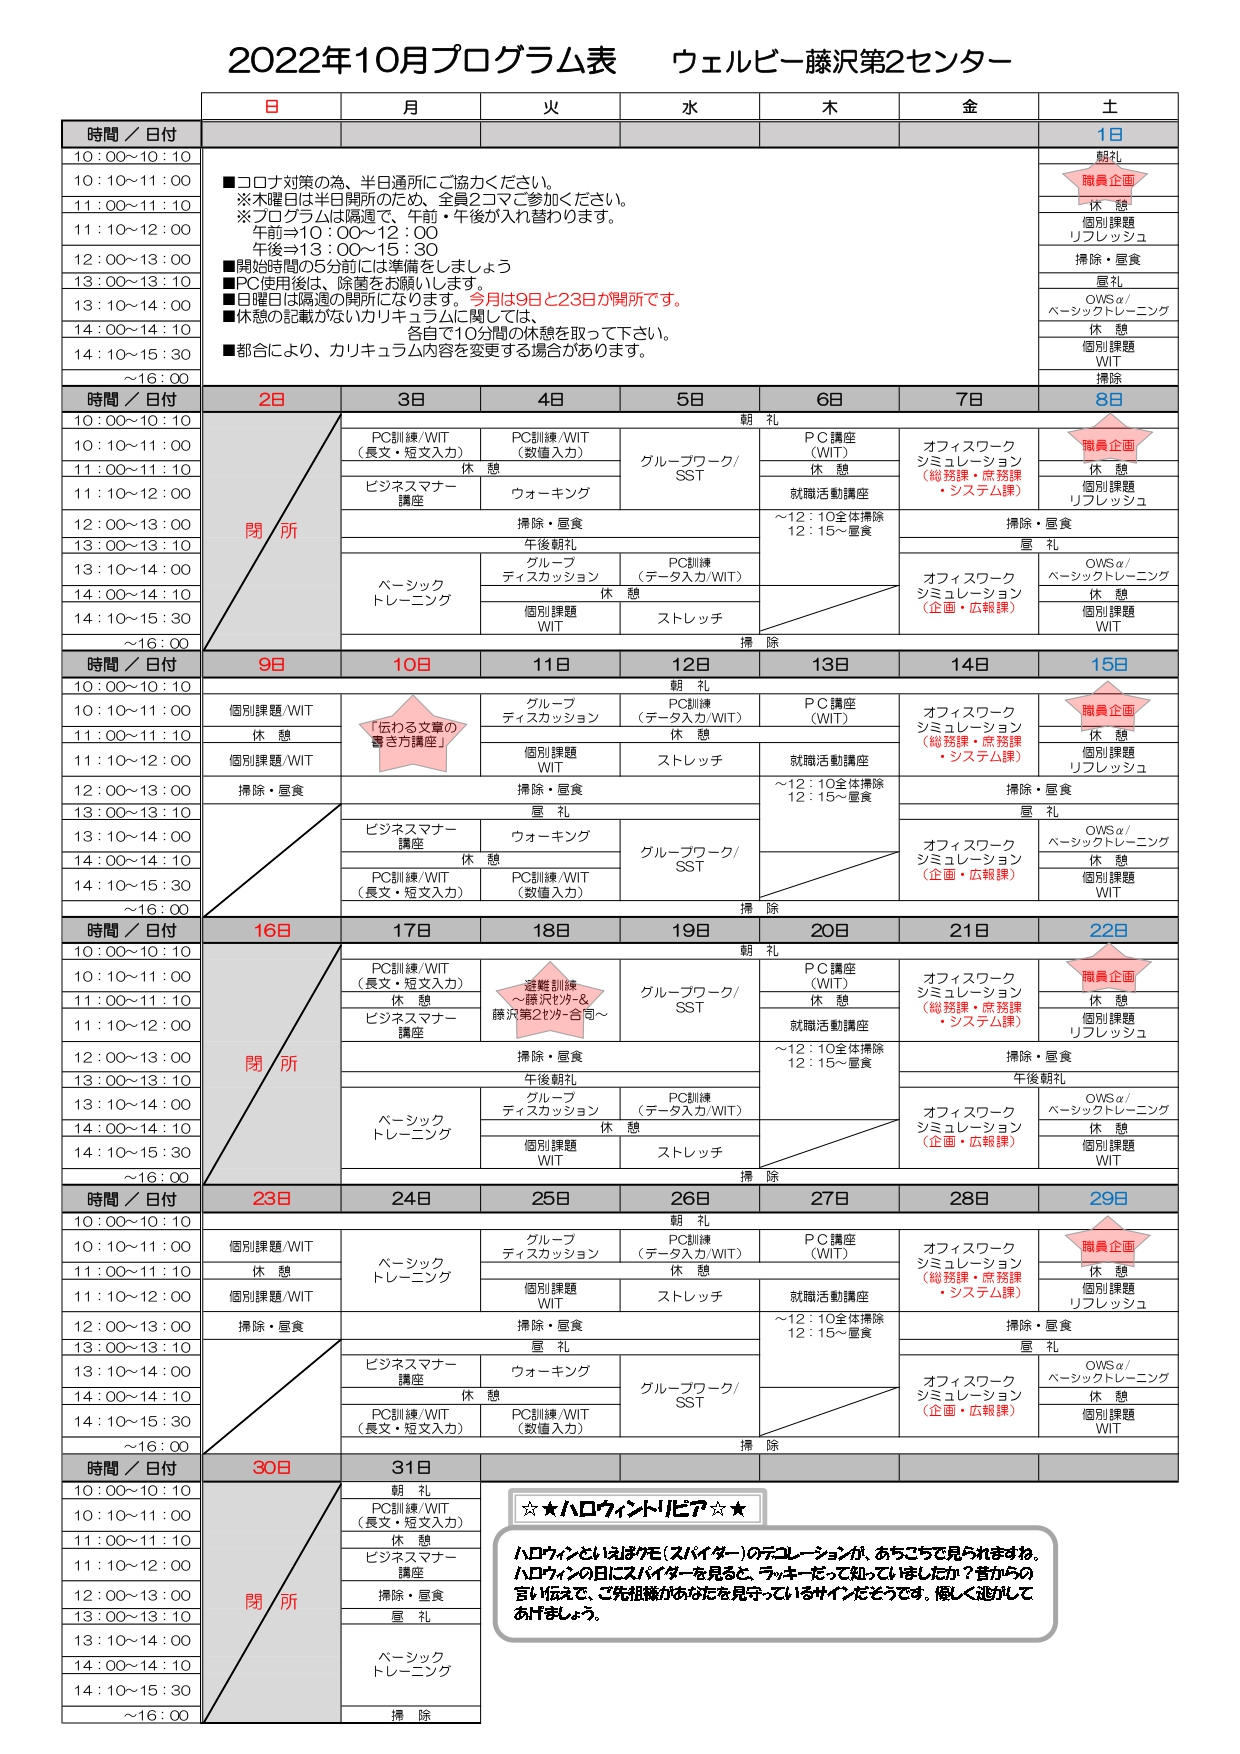 【藤沢第2】プログラム表10月 (1)_page-0001